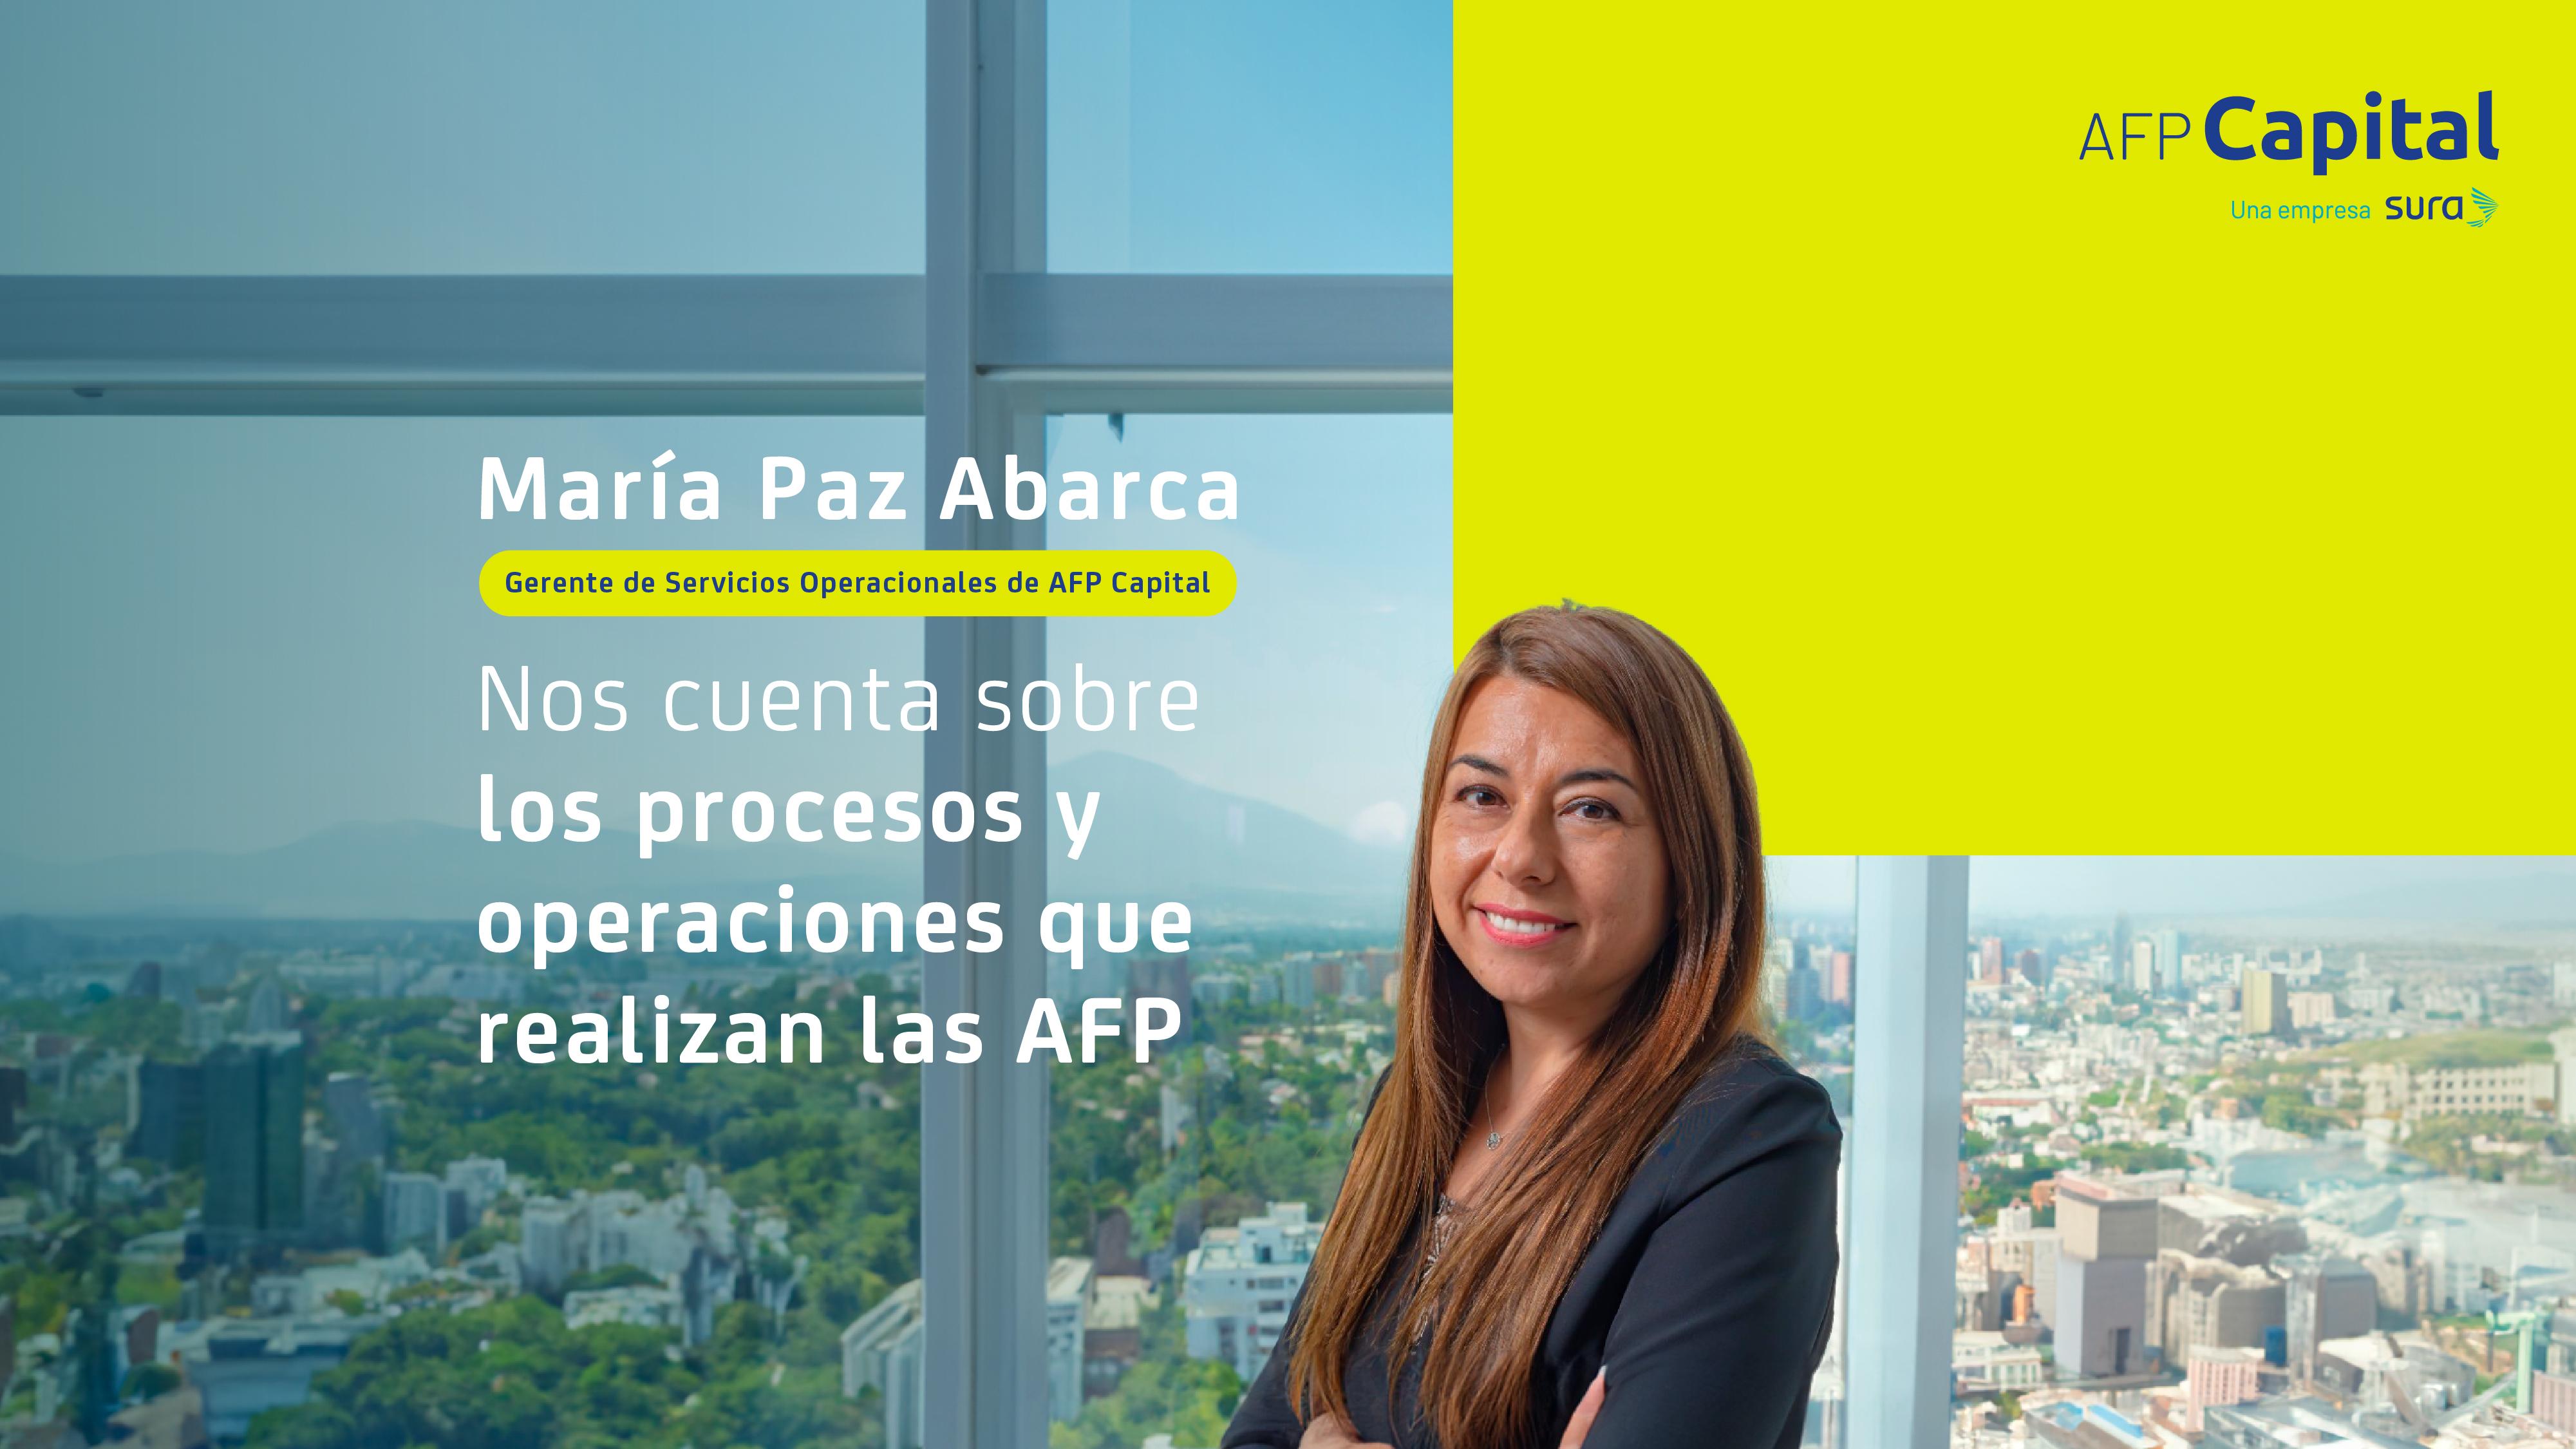 María Paz Abarca, Gerente de Servicios Operacionales de AFP Capital, nos cuenta sobre los procesos y operaciones que realizan las AFP